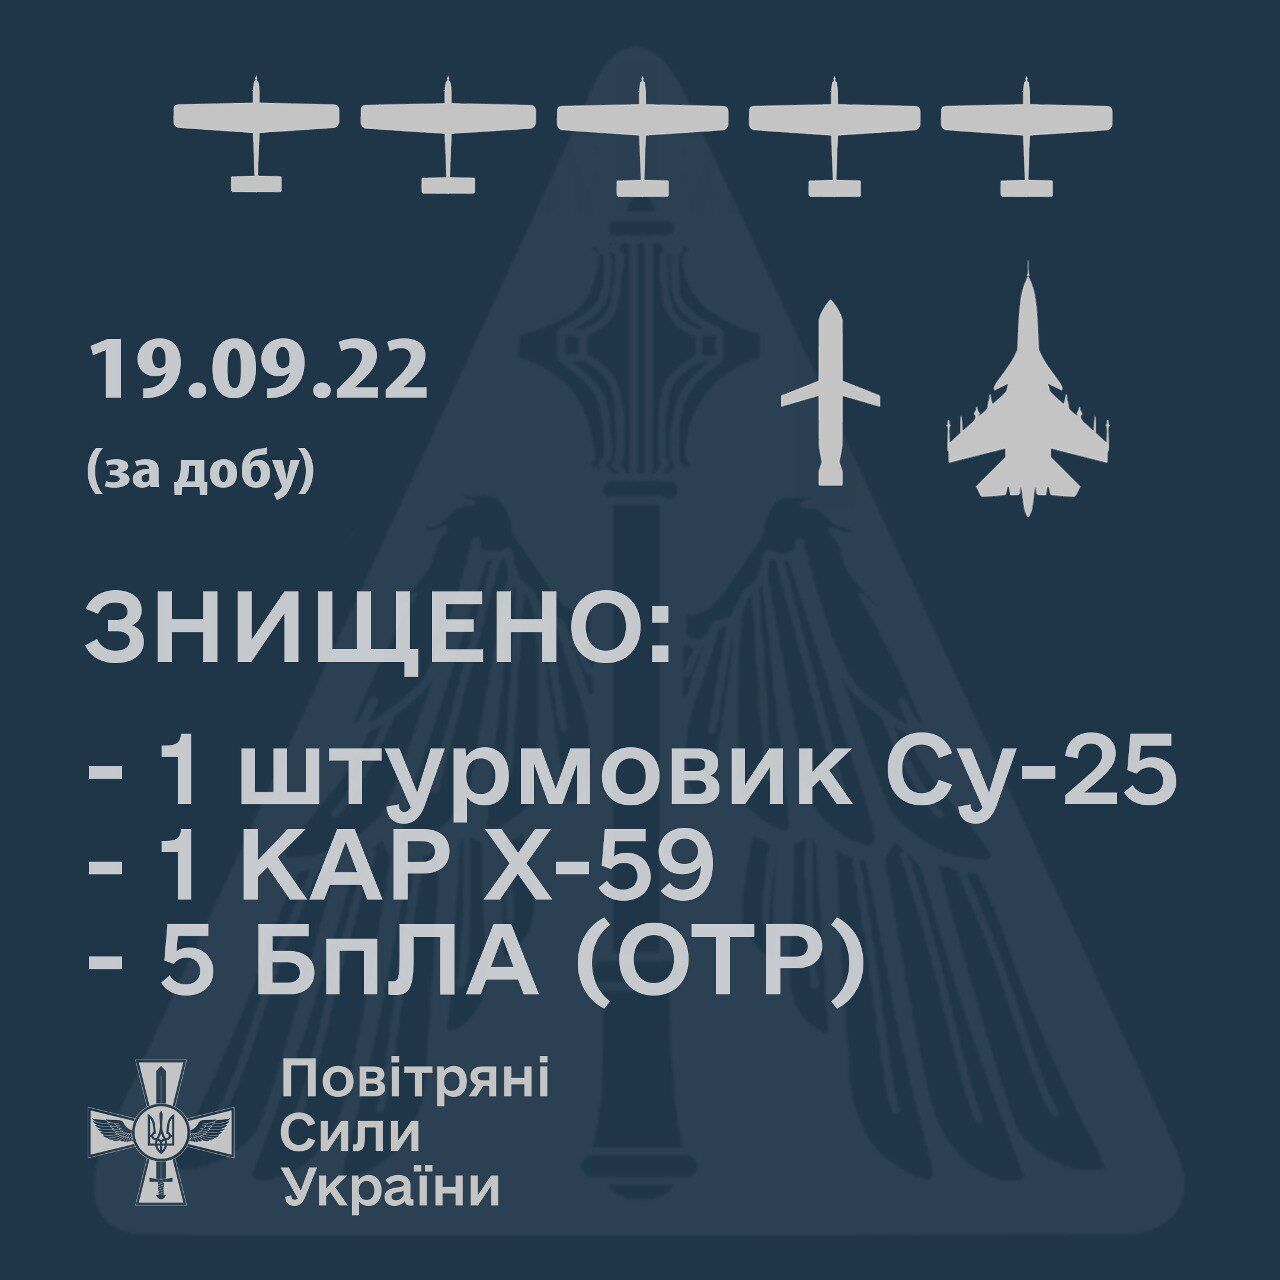 Минус вражеский Су-25, 5 БПЛА и крылатая ракета: украинские зенитчики отчитались о работе за сутки